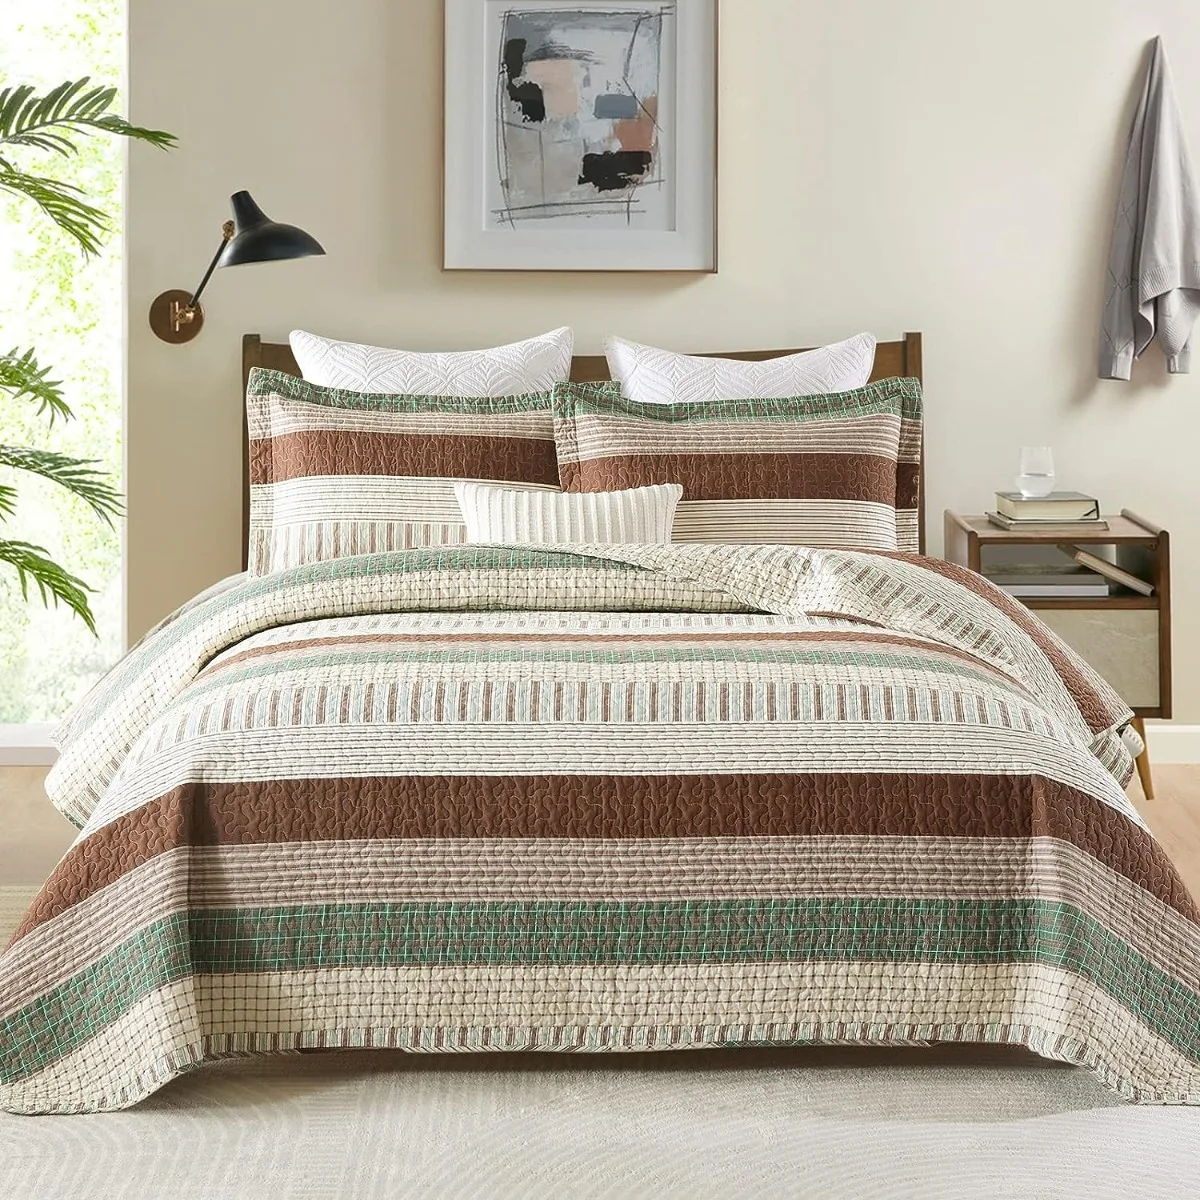 

Комплект стеганого одеяла из 100% хлопка, Королевский размер, легкое двухстороннее одеяло для фермерского хозяйства, зеленый/коричневый/бежевый цвета для всех сезонов, 3 шт.